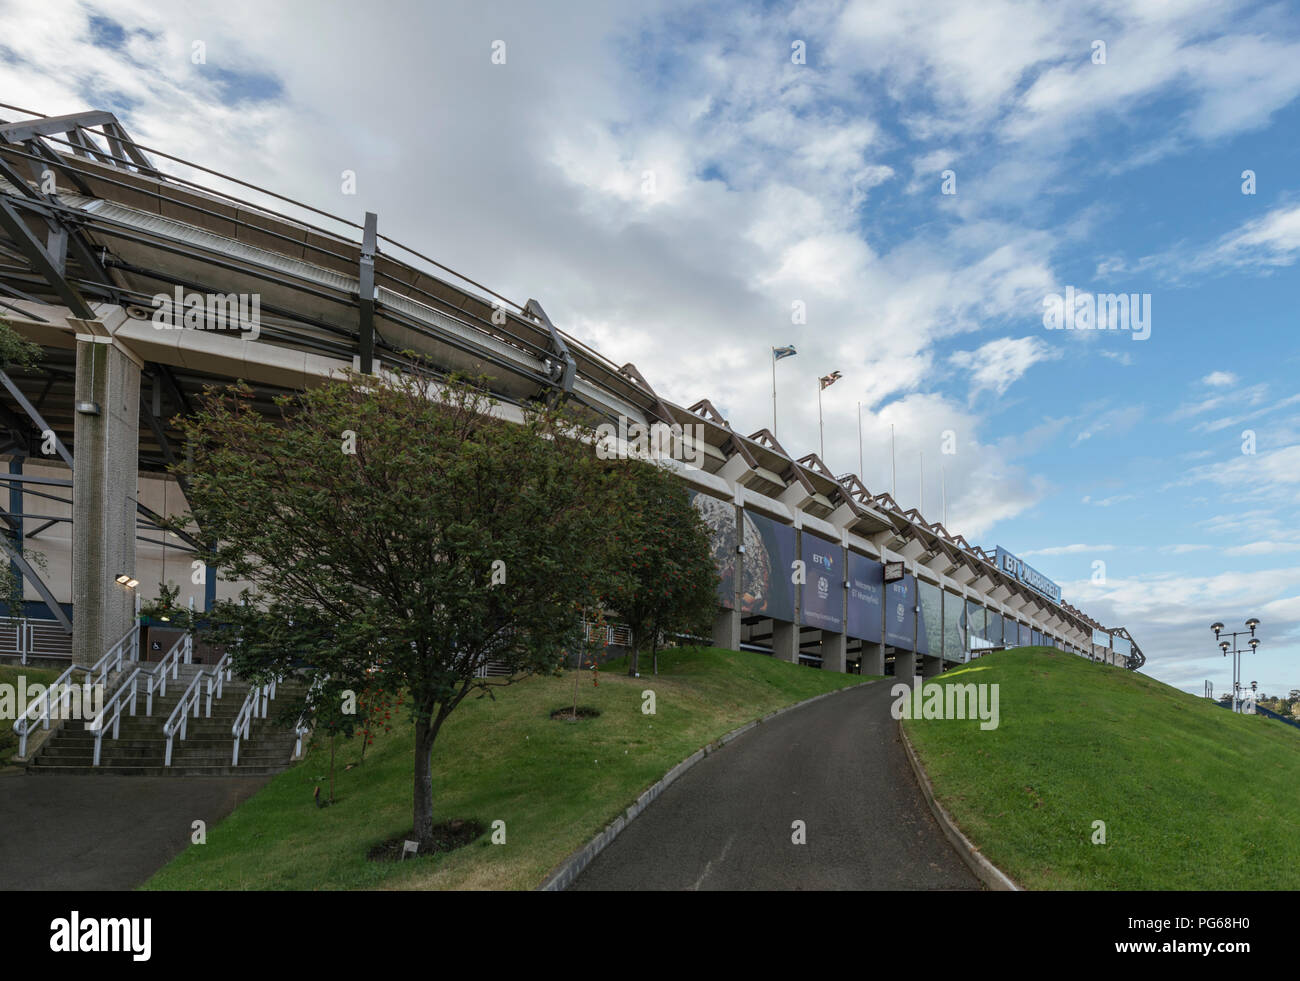 Le stade de Murrayfield est l'accueil de l'équipe nationale de rugby Ecosse dans l'ouest de Edimbourg, Ecosse, Royaume-Uni Banque D'Images